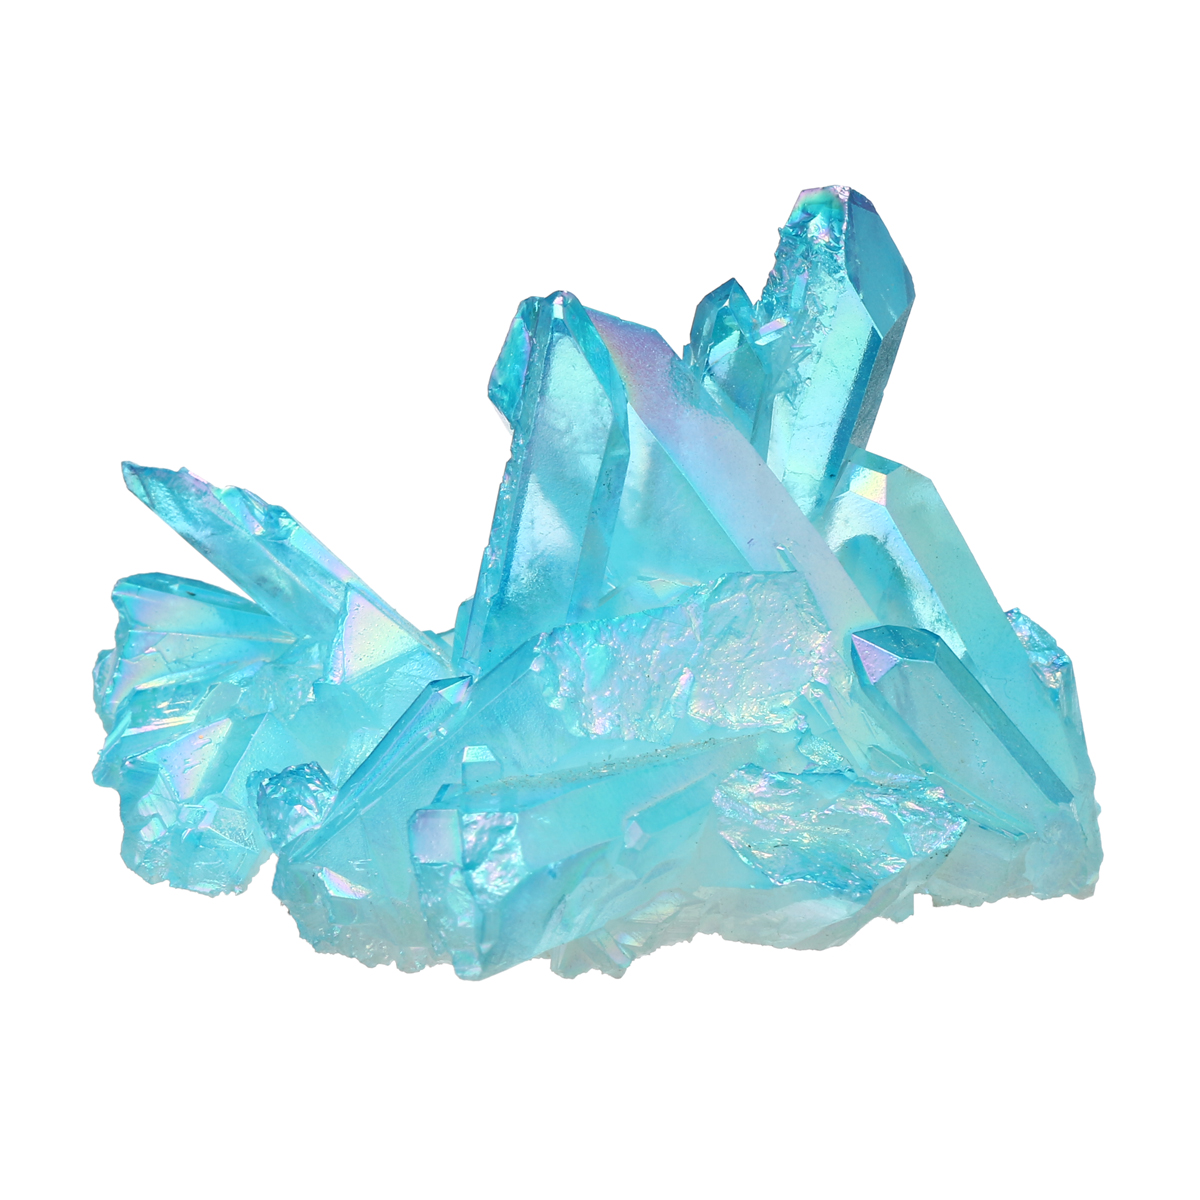 

1Pcs Royal Blue Natural Crystals Quartz Cluster Mineral Specimen Healing Home Decorations